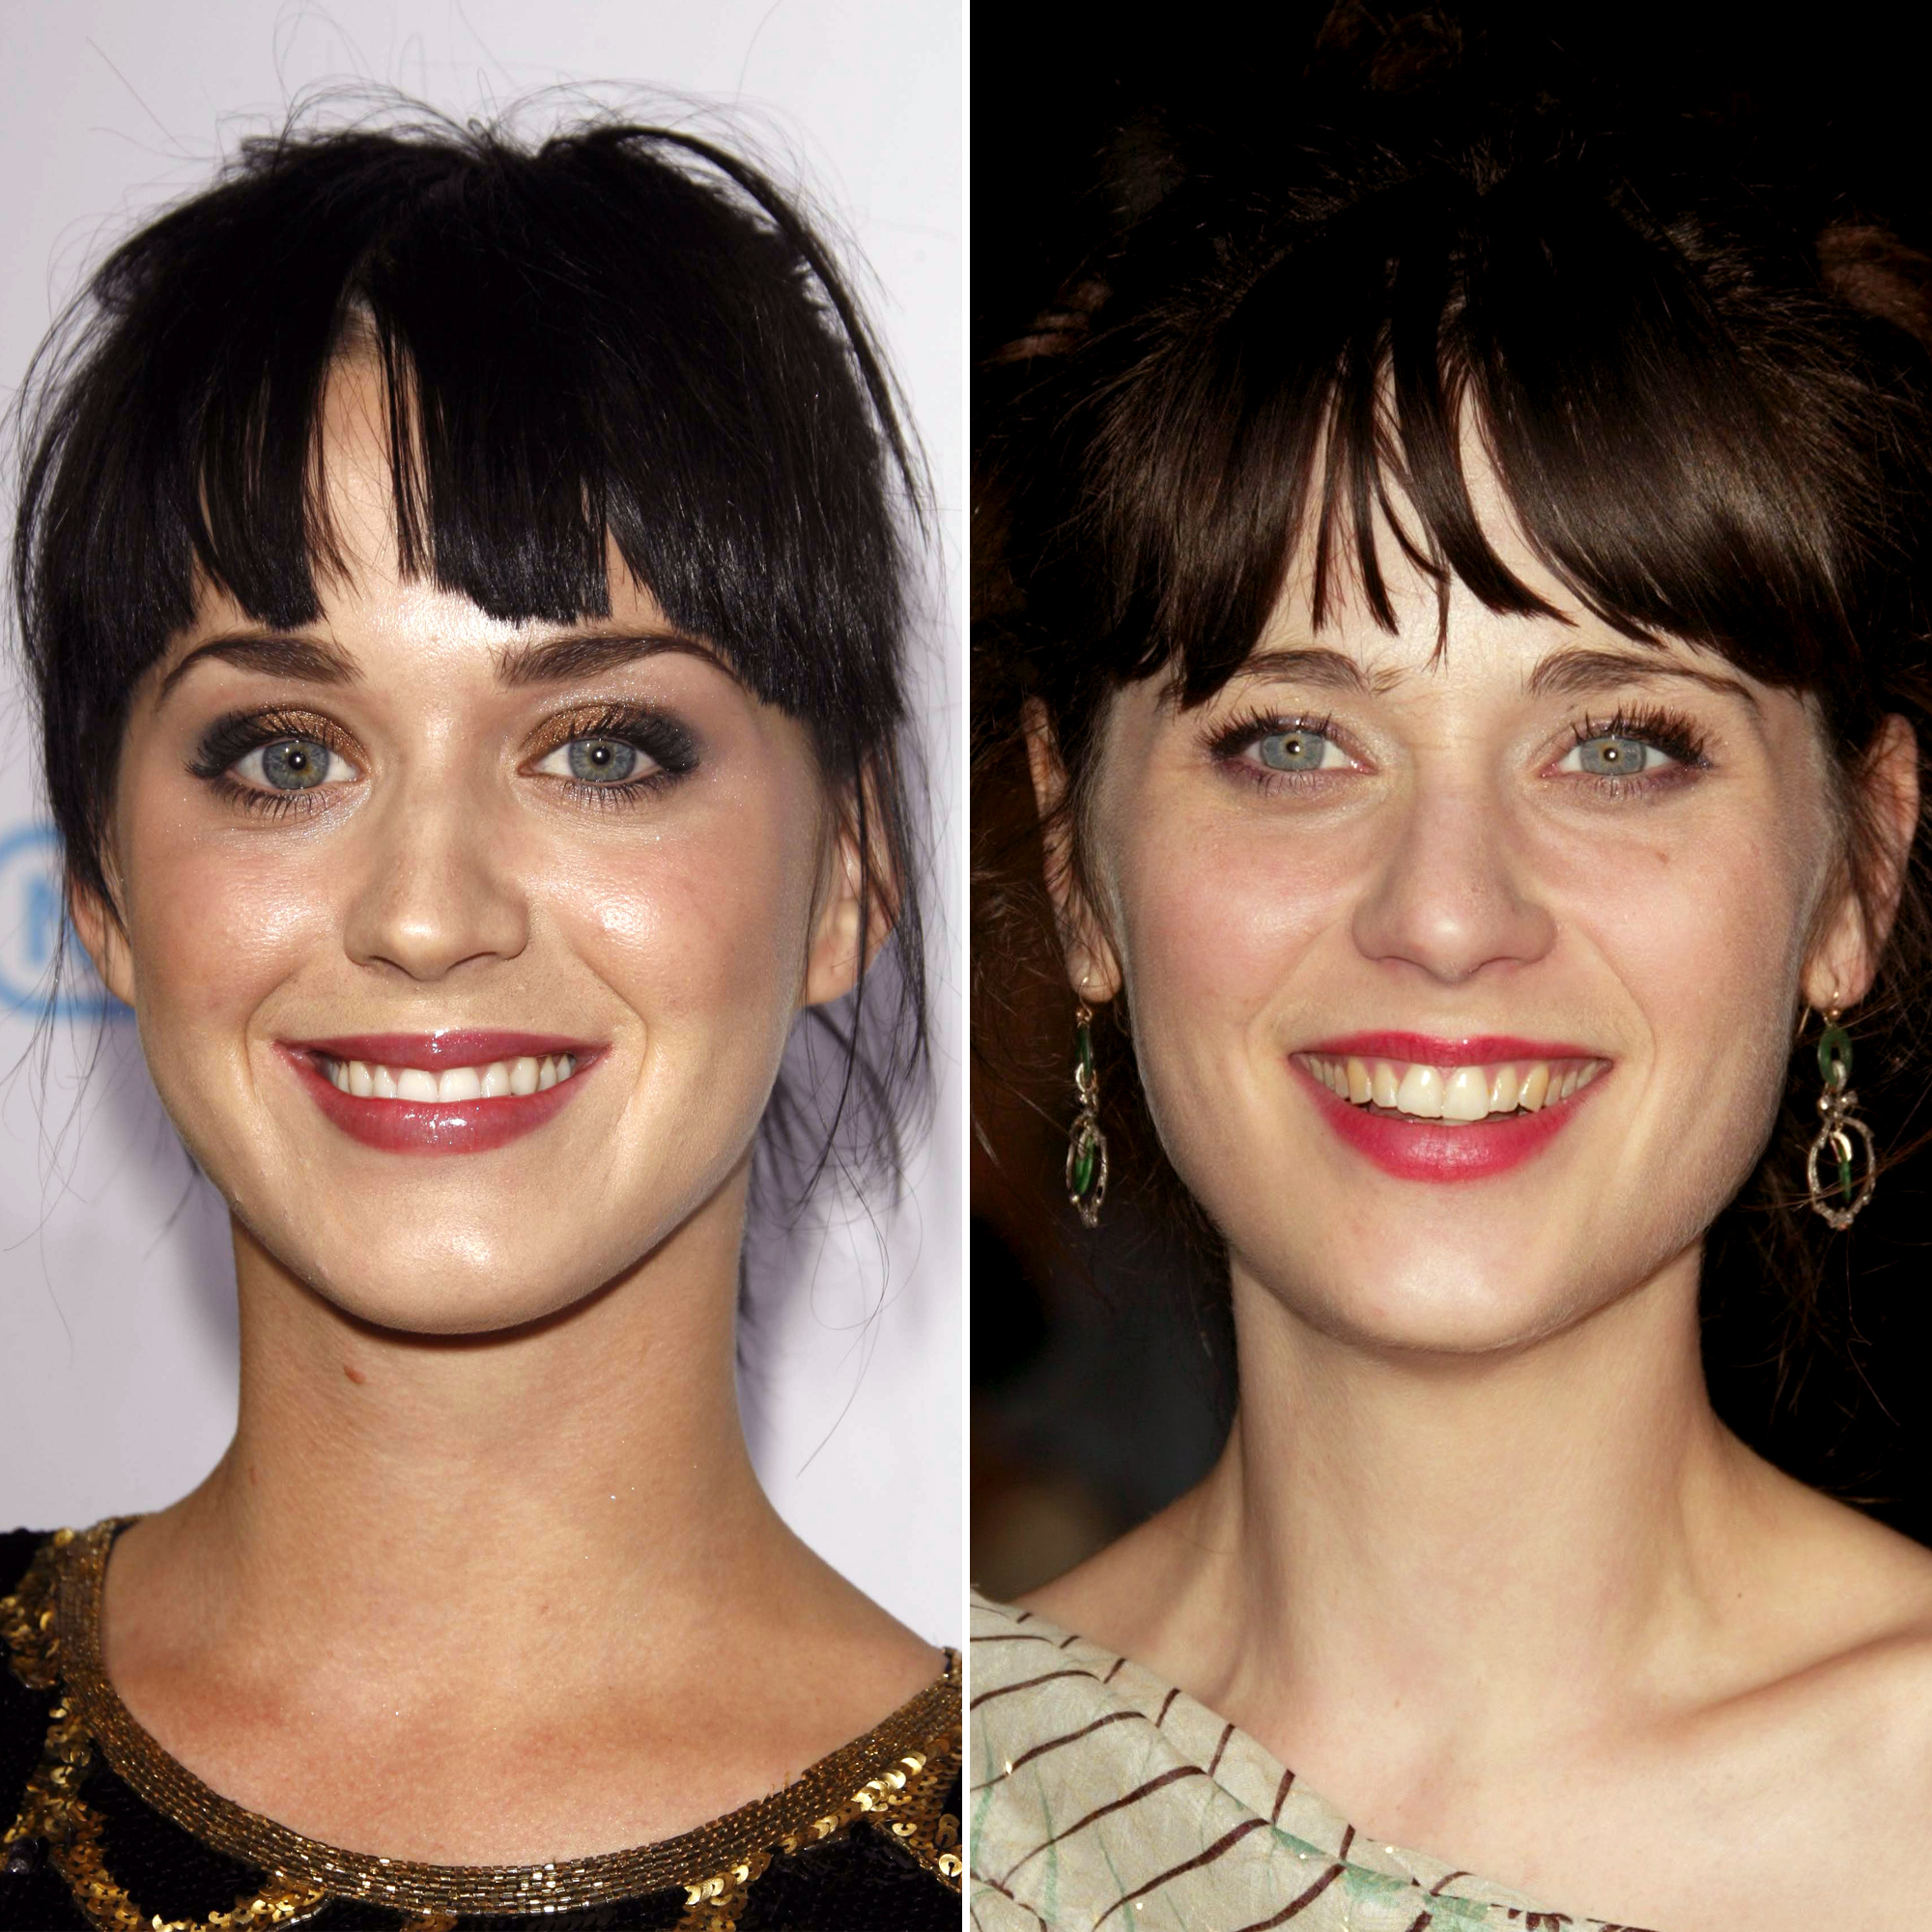 celebrity doppelgangers double take alike look shutterstock say